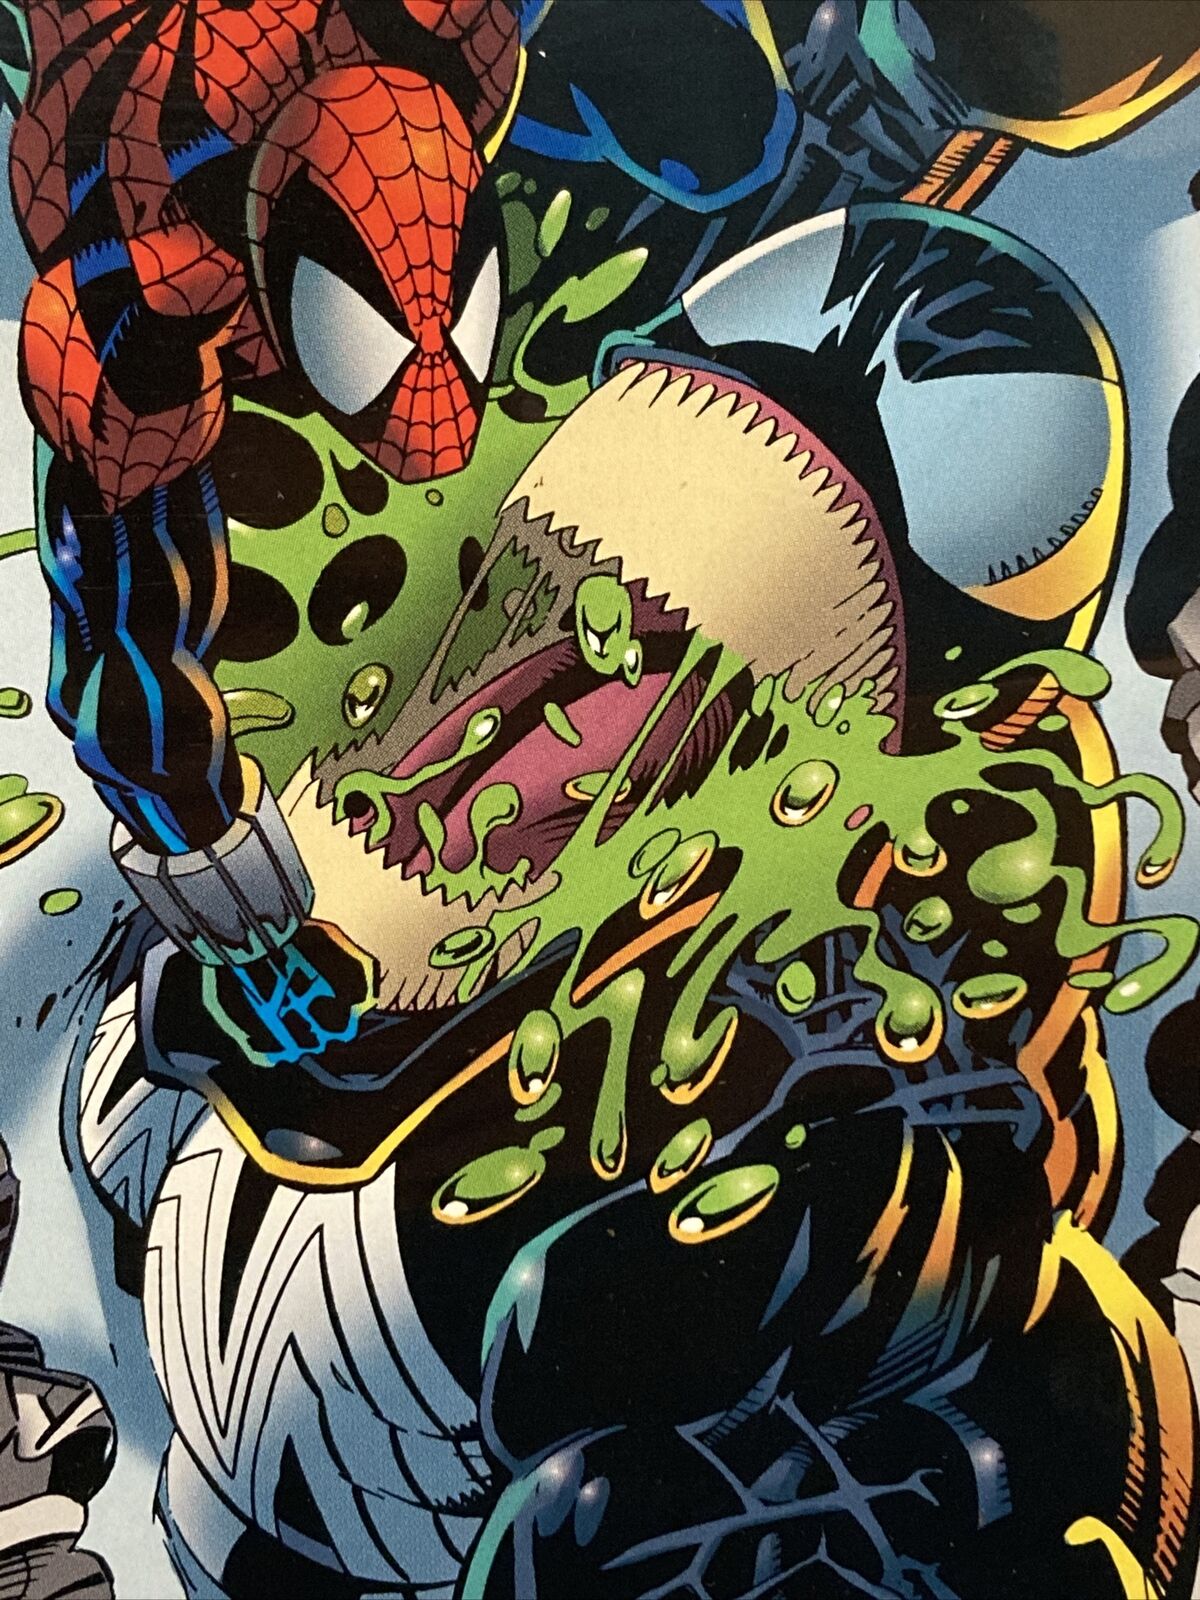 Venom: Along Came a Spider #4 (Apr 1996, Marvel) VF/NM